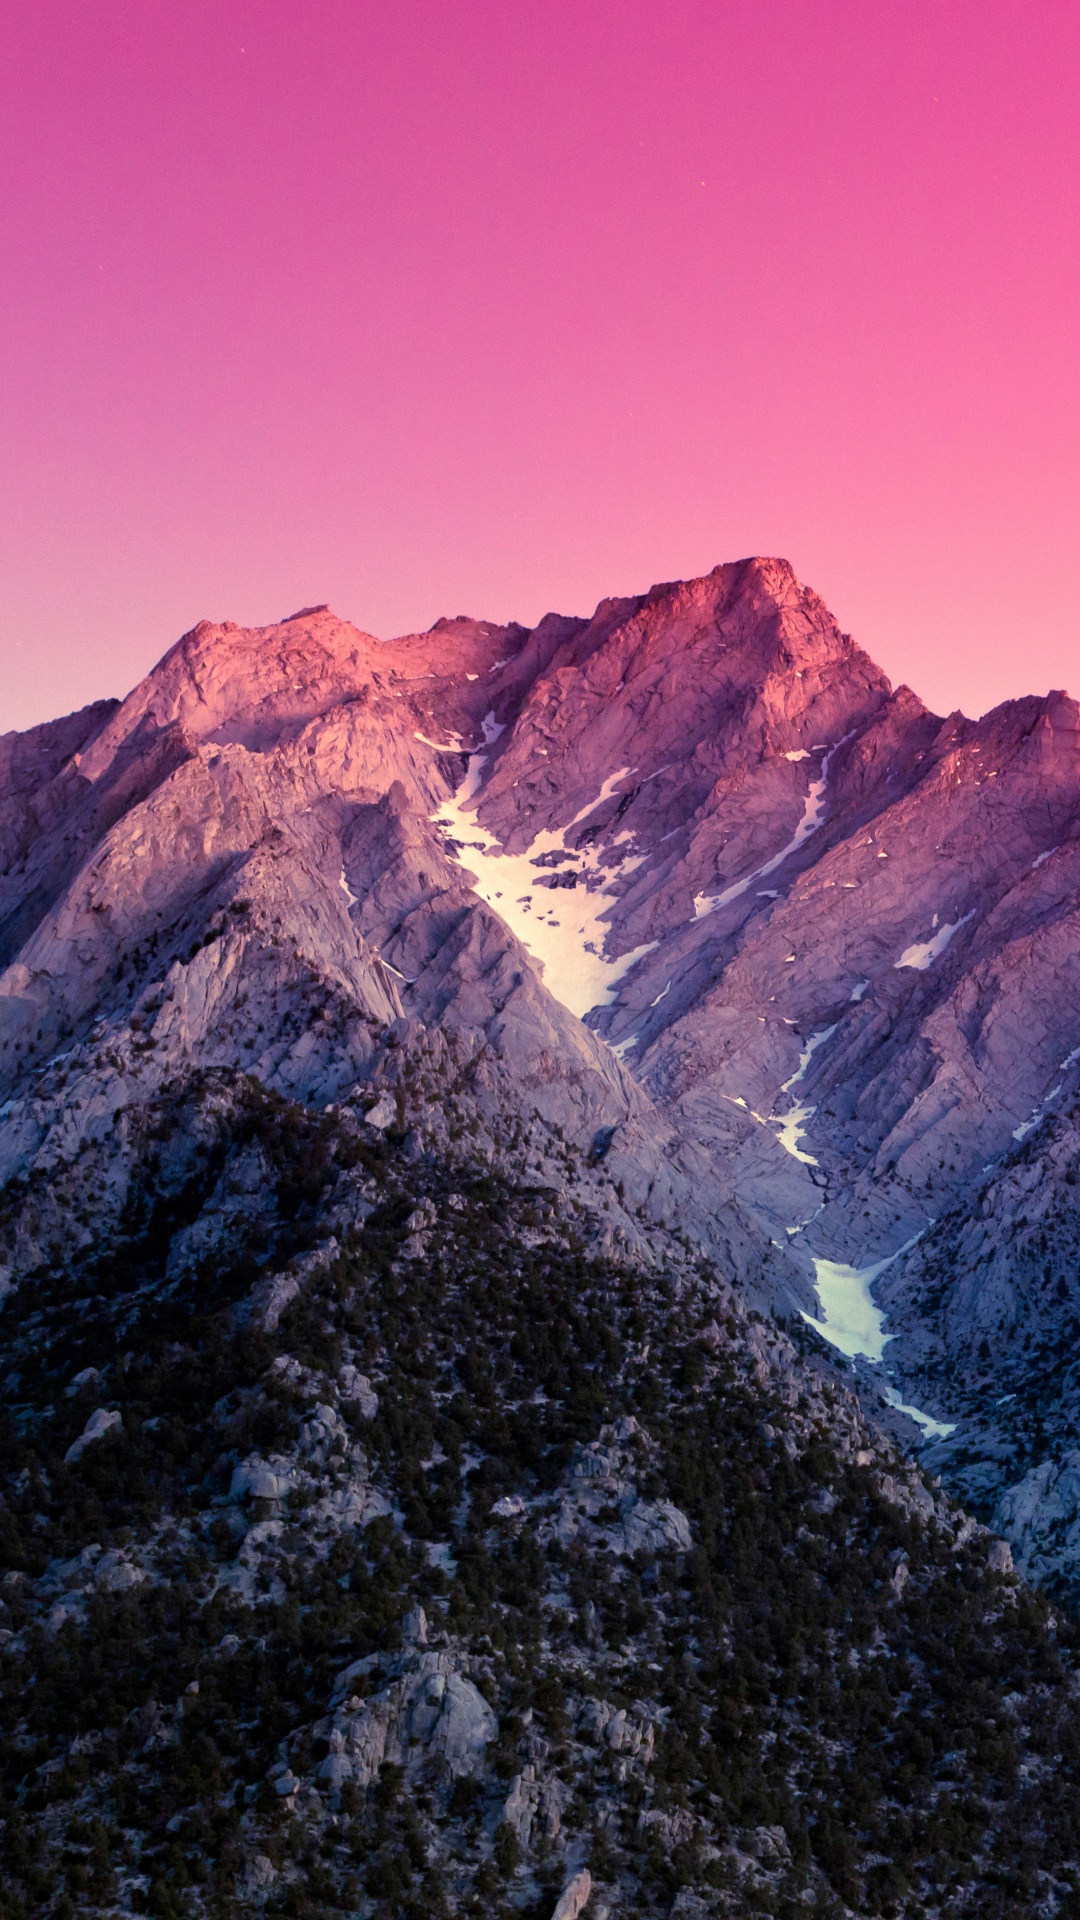 Montaña Rocosa Marrón y Gris Bajo un Cielo Azul Durante el Día. Wallpaper in 1080x1920 Resolution